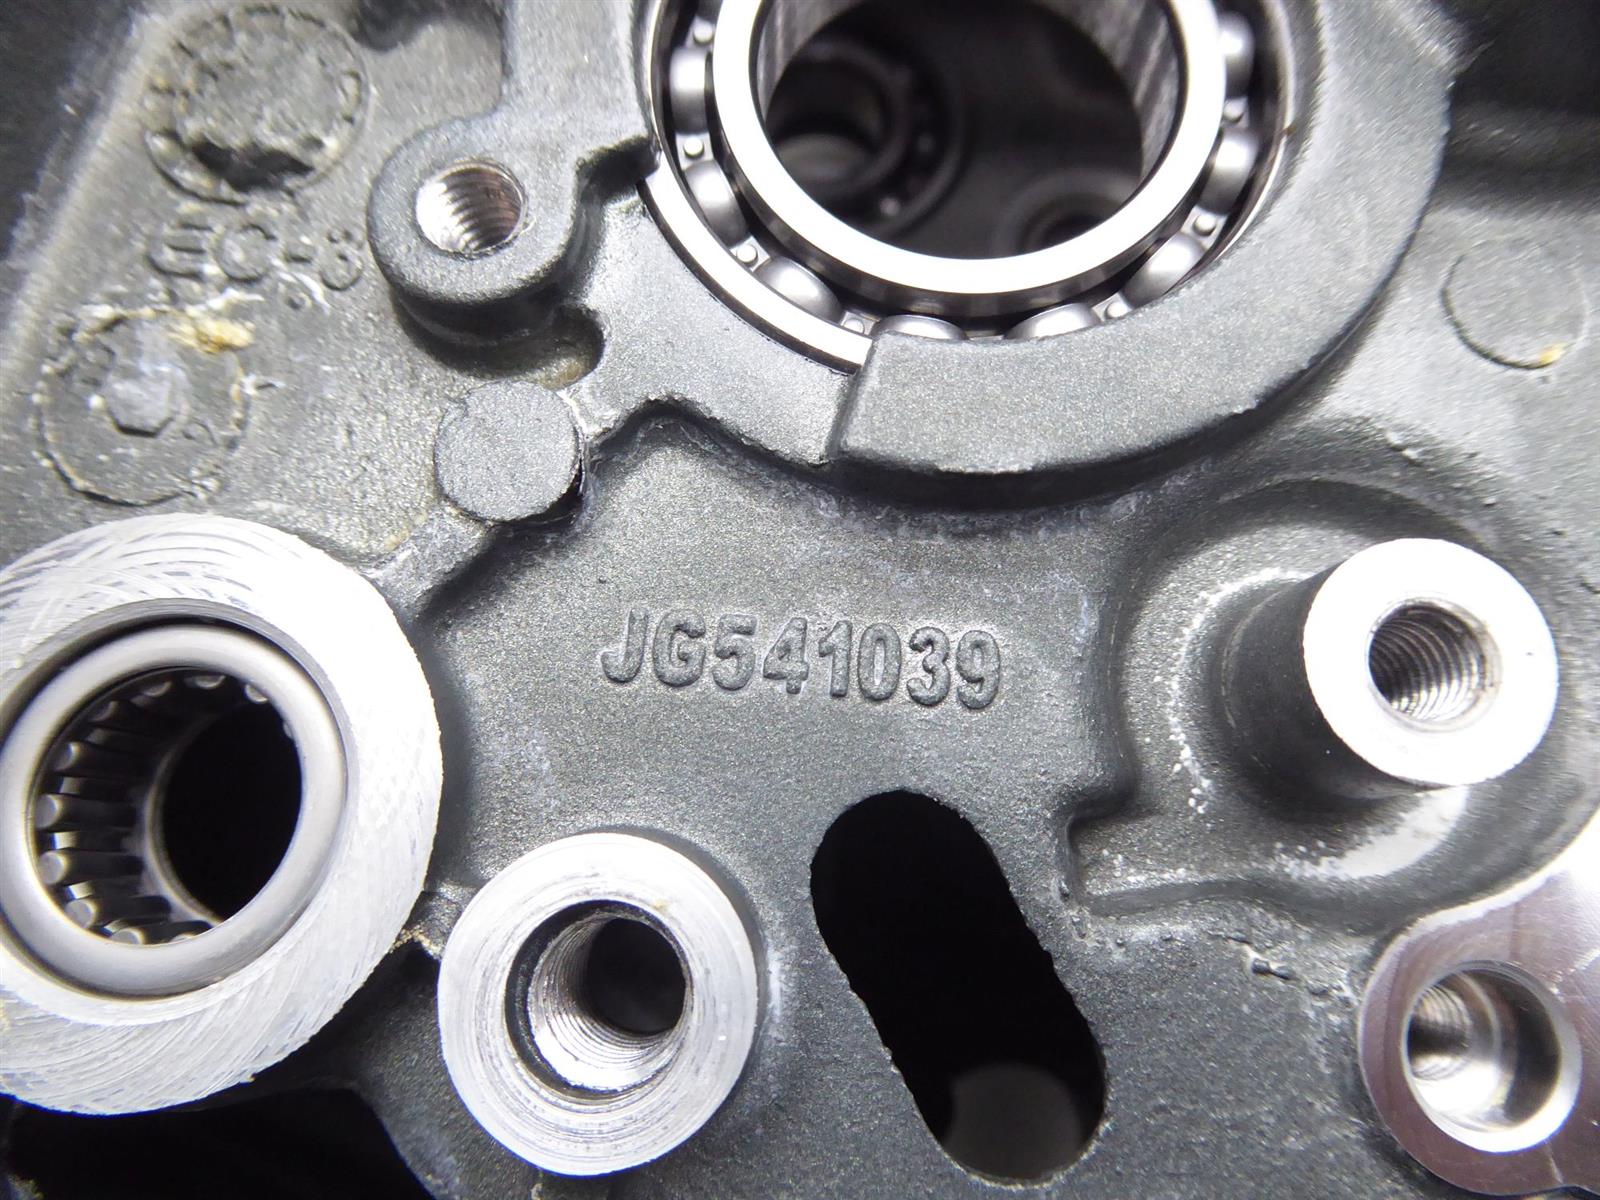 KTM 125 Duke 2016 Engine housing 90130000344